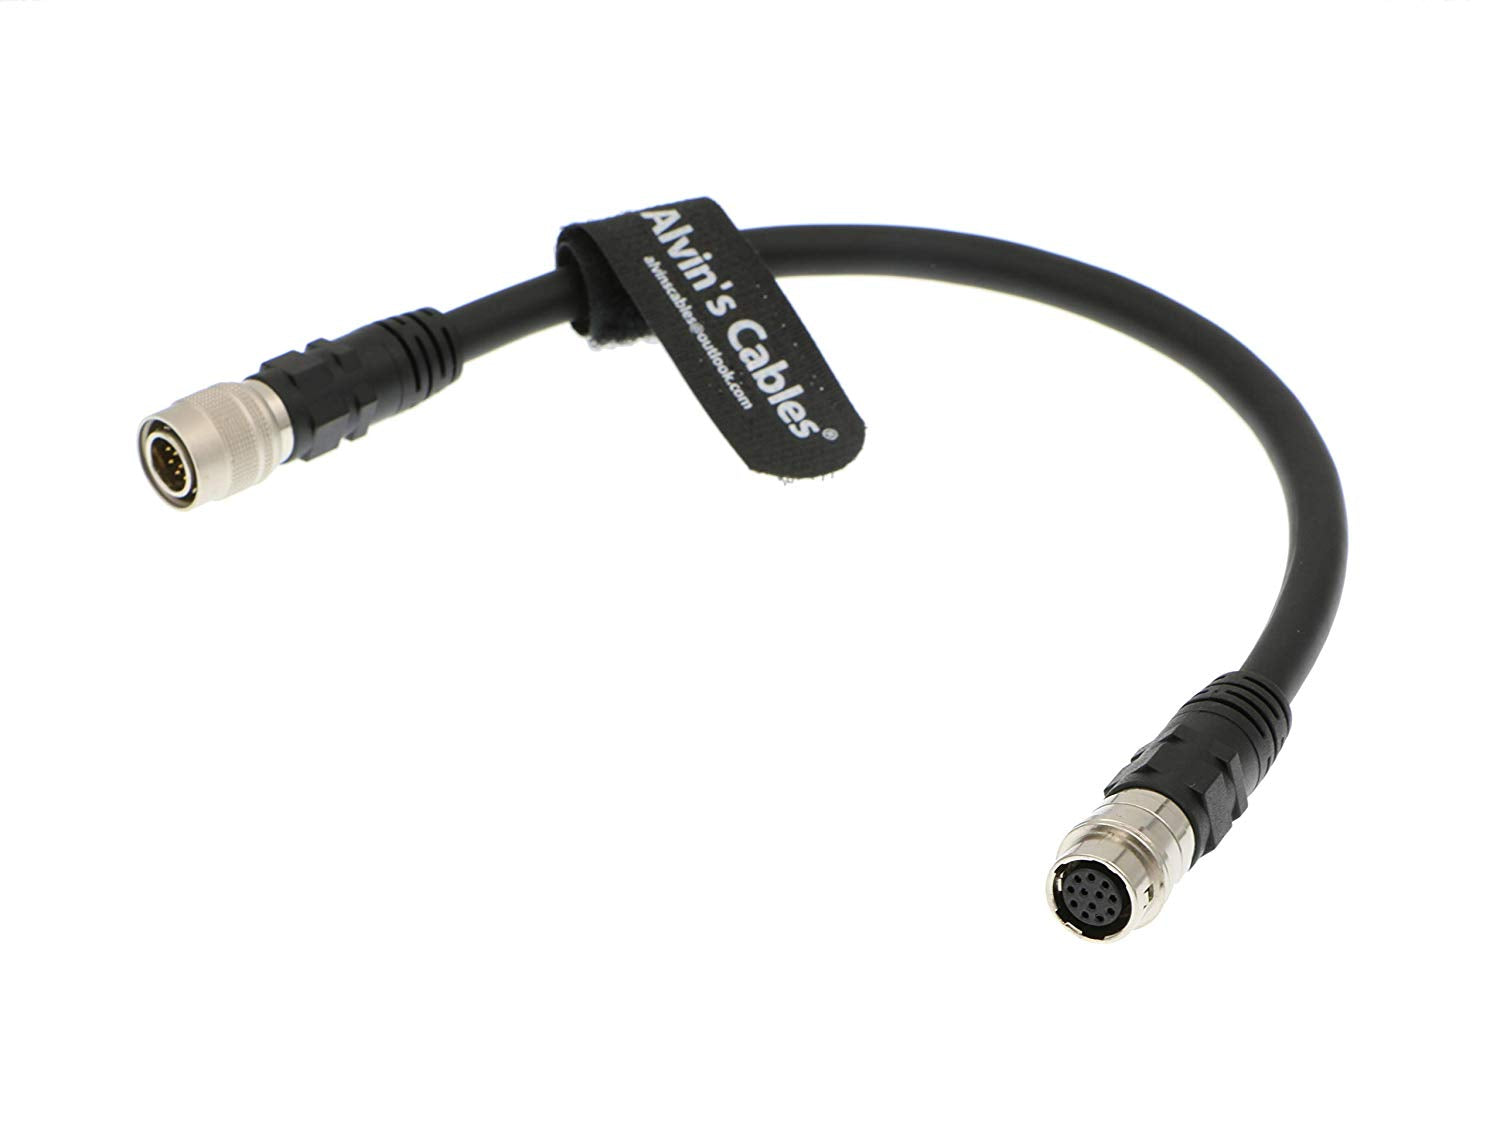 Alvin's Cables 12-poliger Hirose-Stecker auf 12-polige Buchse Verlängerungskabel Fujinon-Objektiv-Steuerkabel für Fujifilm-Kameras